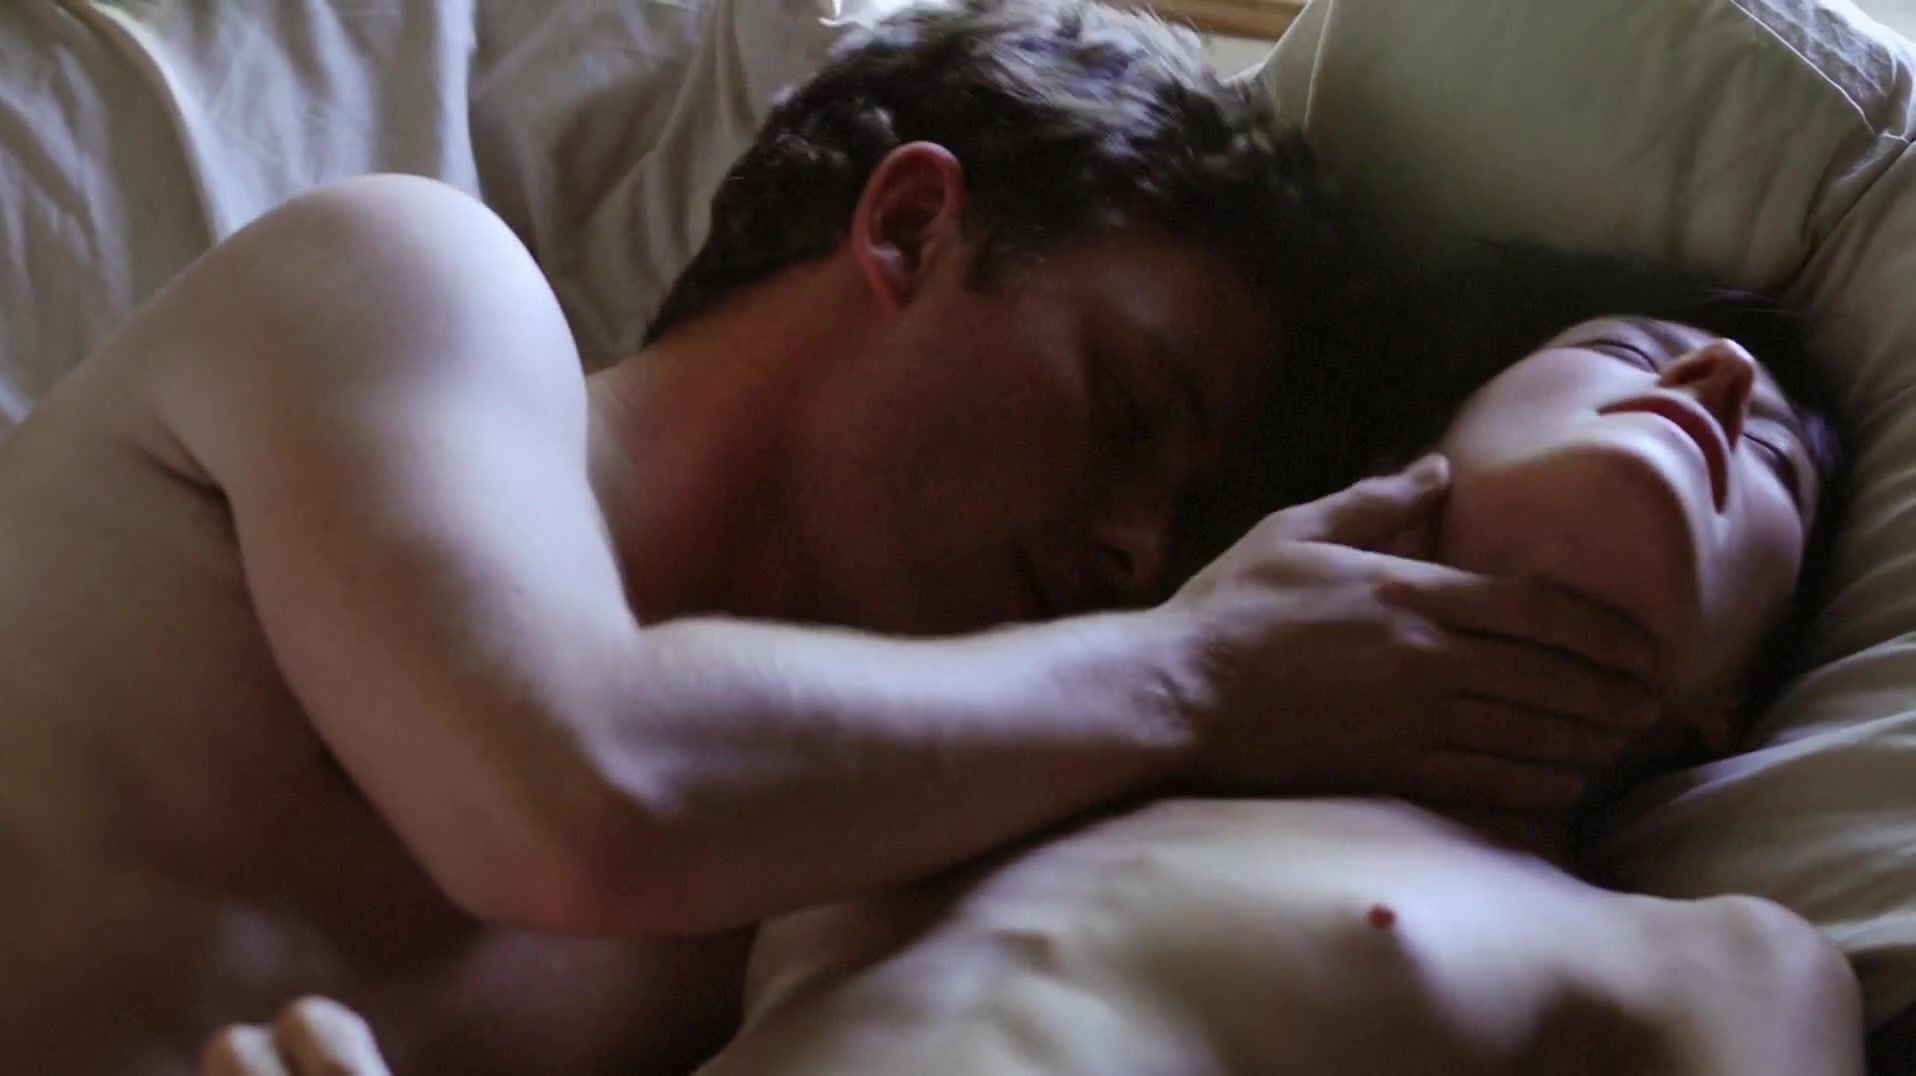 Spa Full Frontal nudity scene of erotic movie "Hide and Seek aka Amorous" Hanime